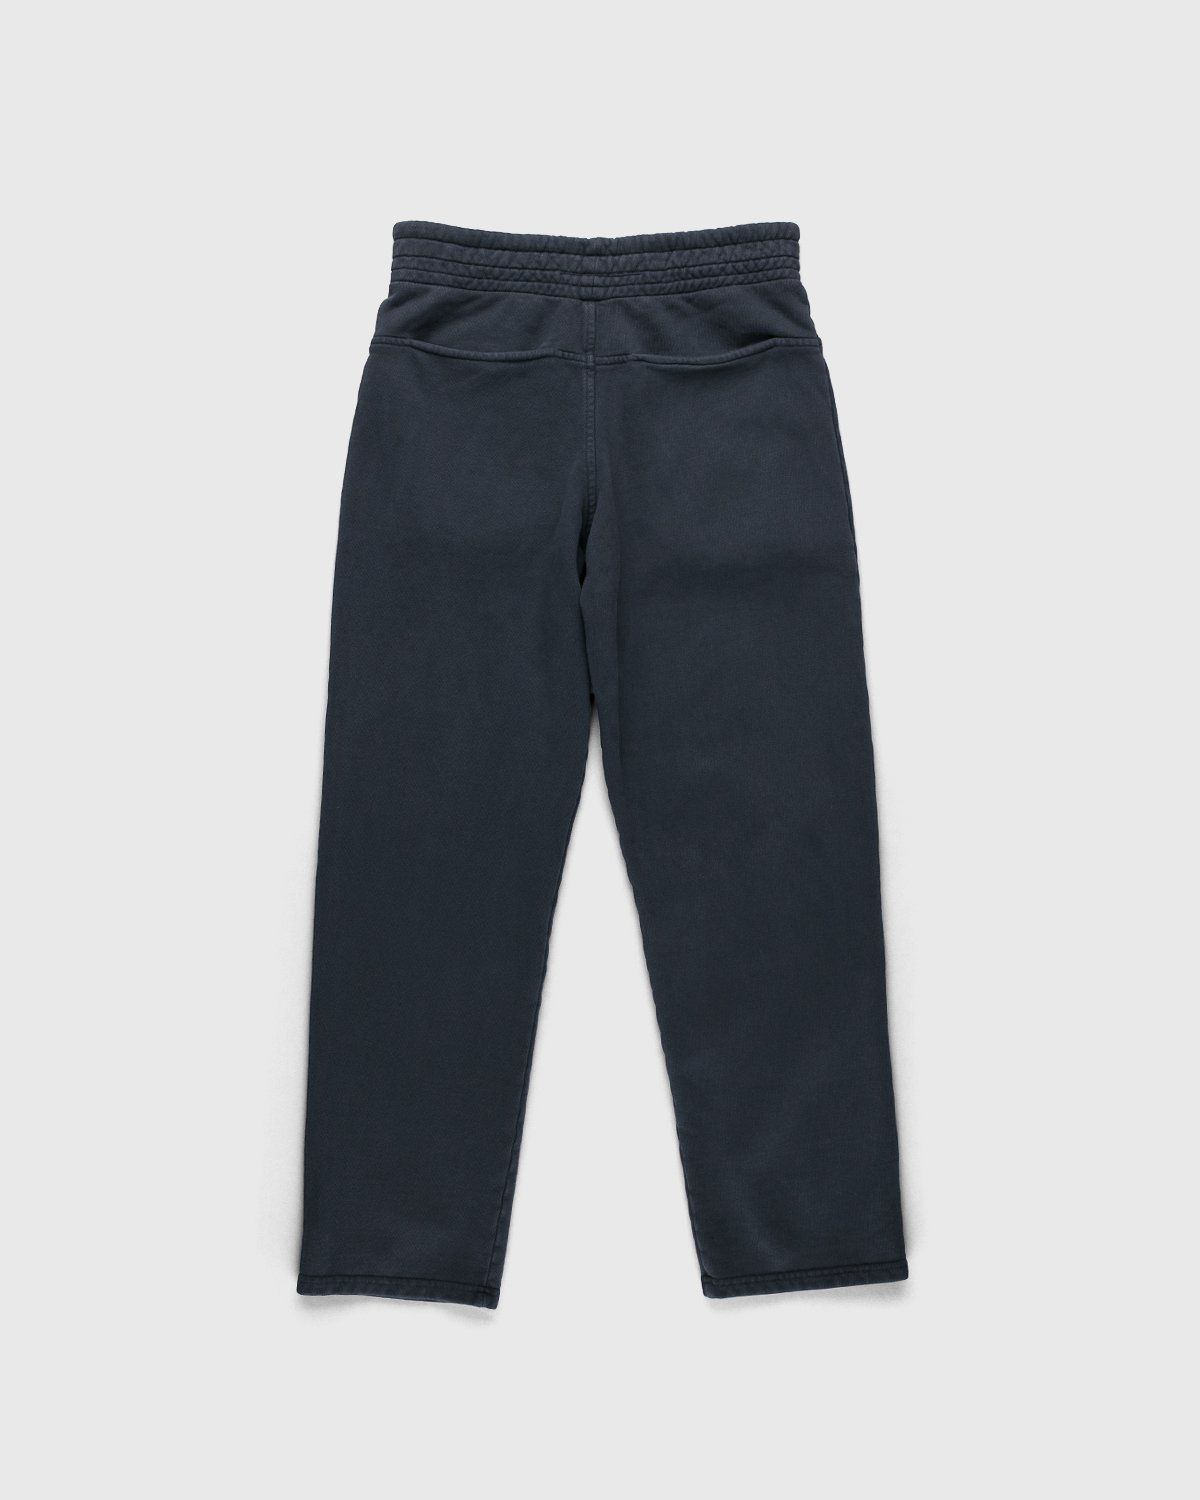 Darryl Brown – Gym Pants Vintage Black - Pants - Black - Image 2